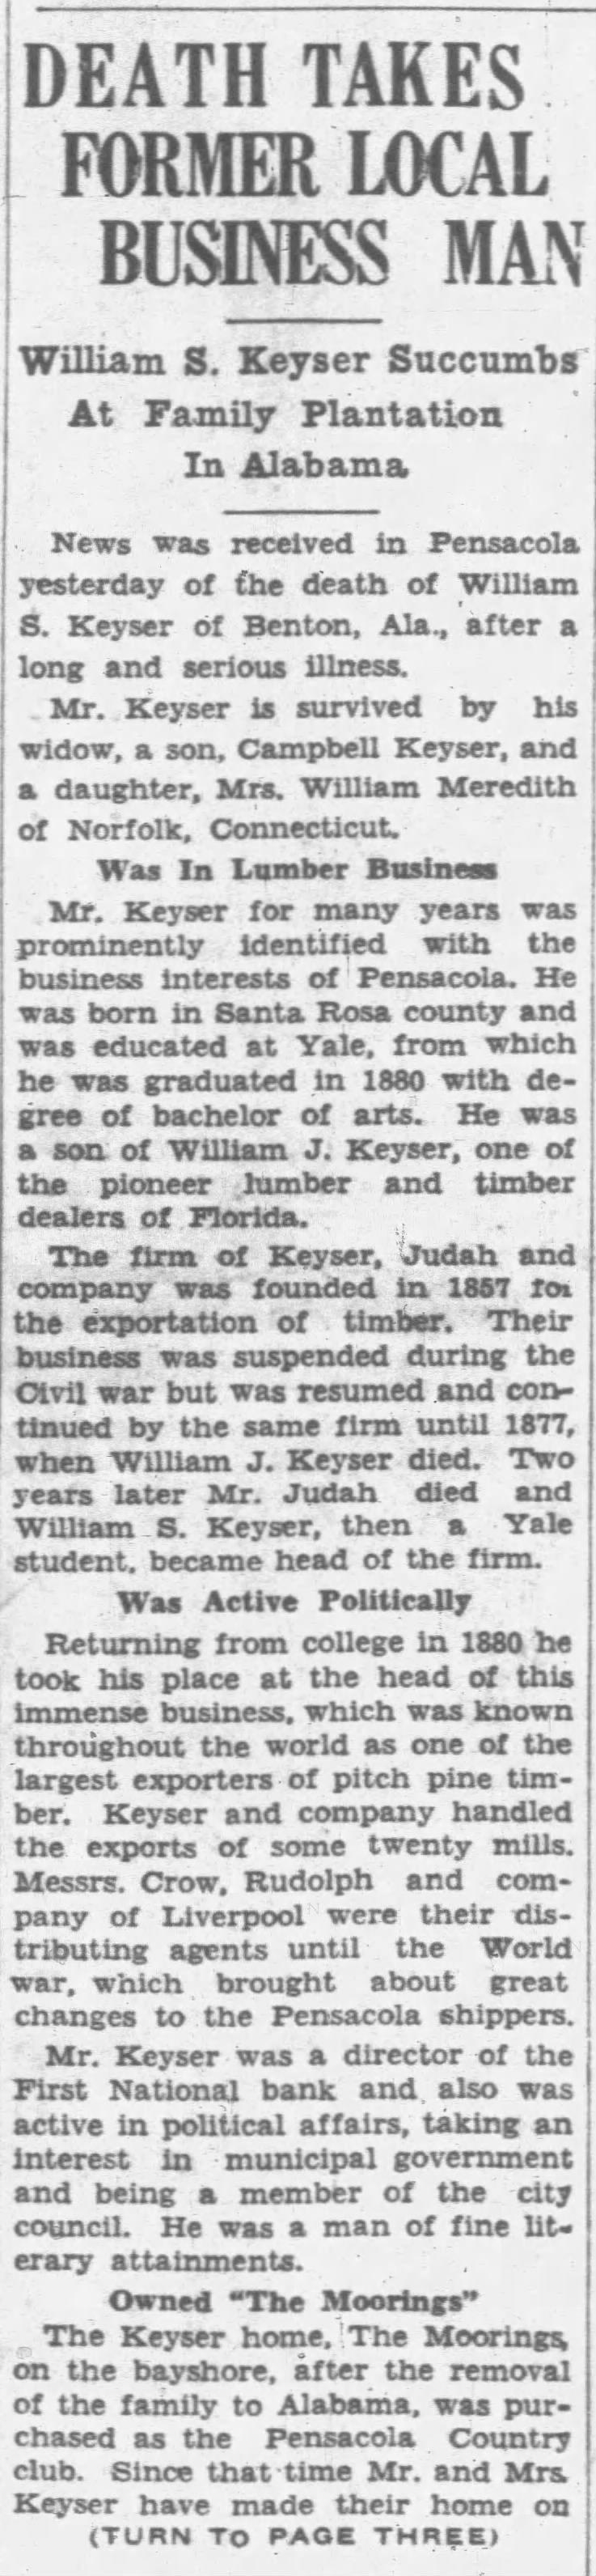 William S. Keyser Dies